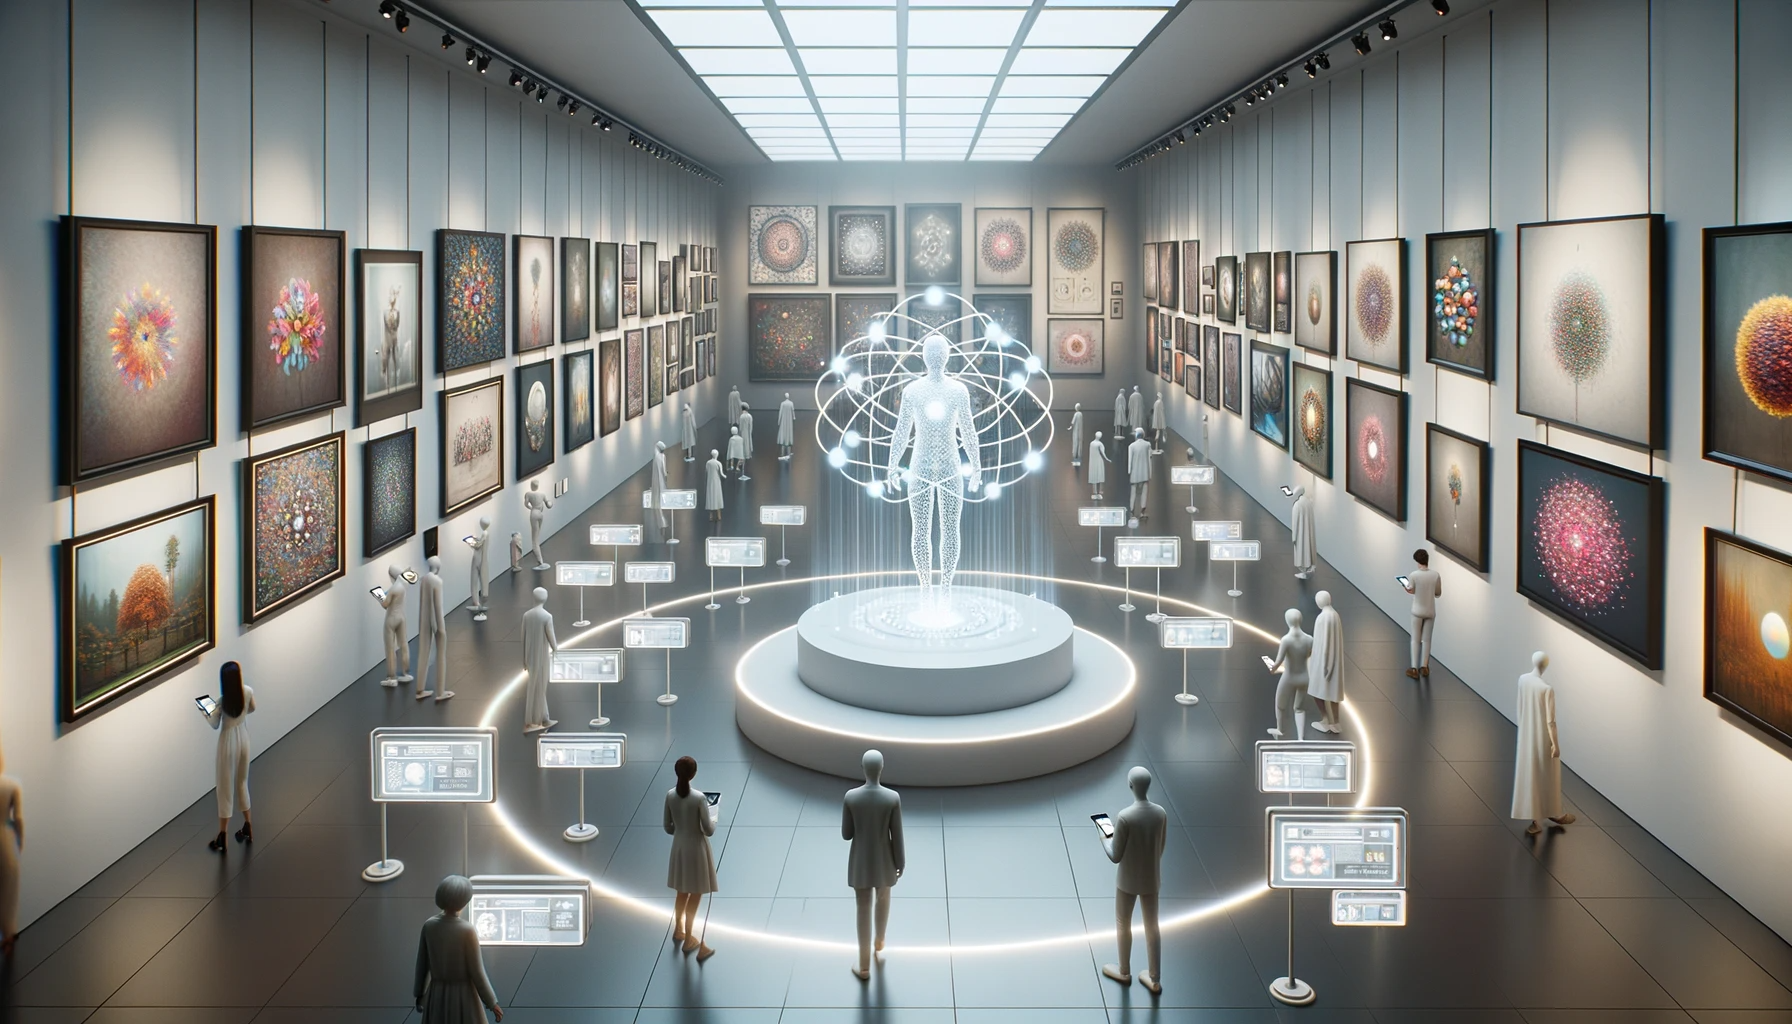 Wendy Kier, AI Art, Digital frames line the walls, displaying a myriad of Ai